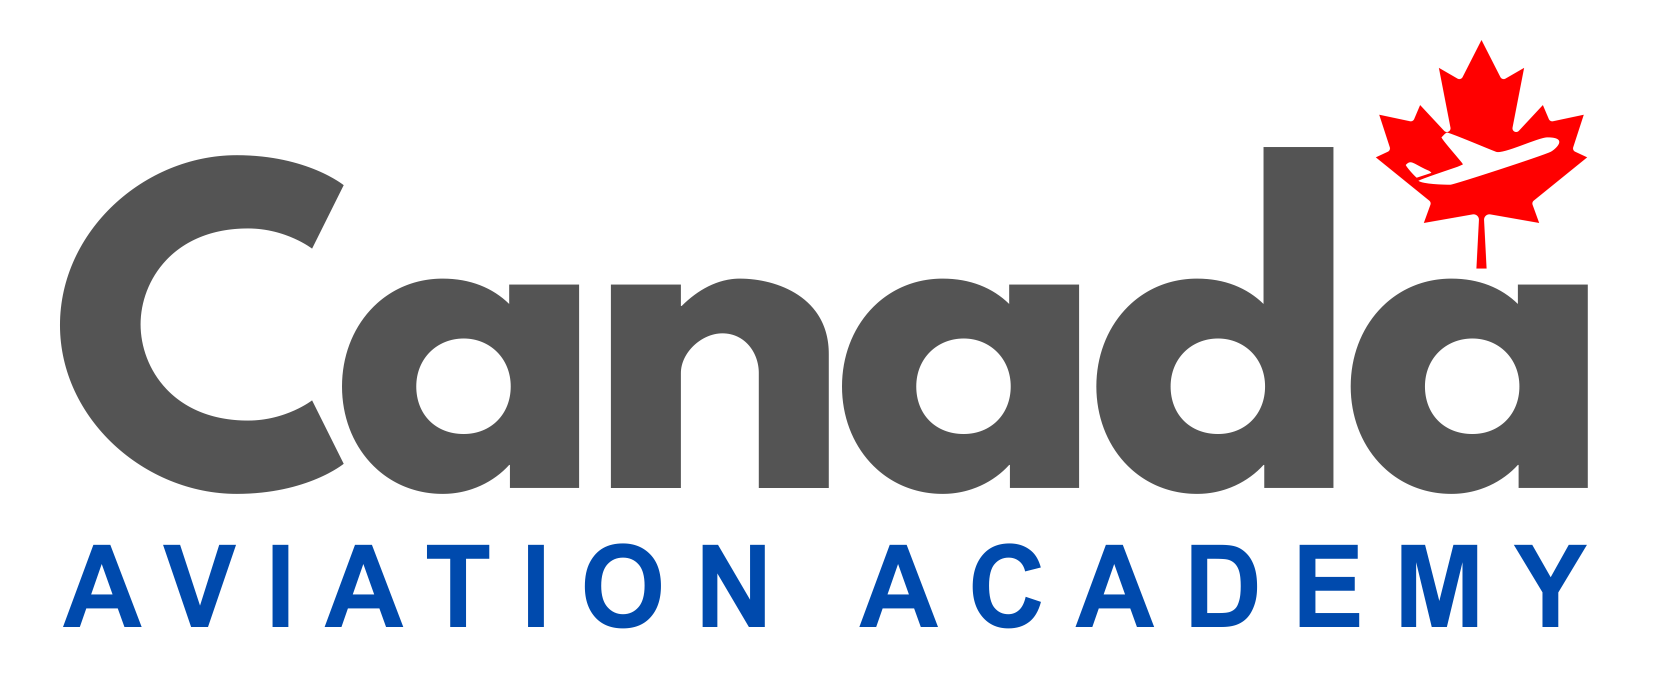 Ravgunn / Canada Aviation Academy